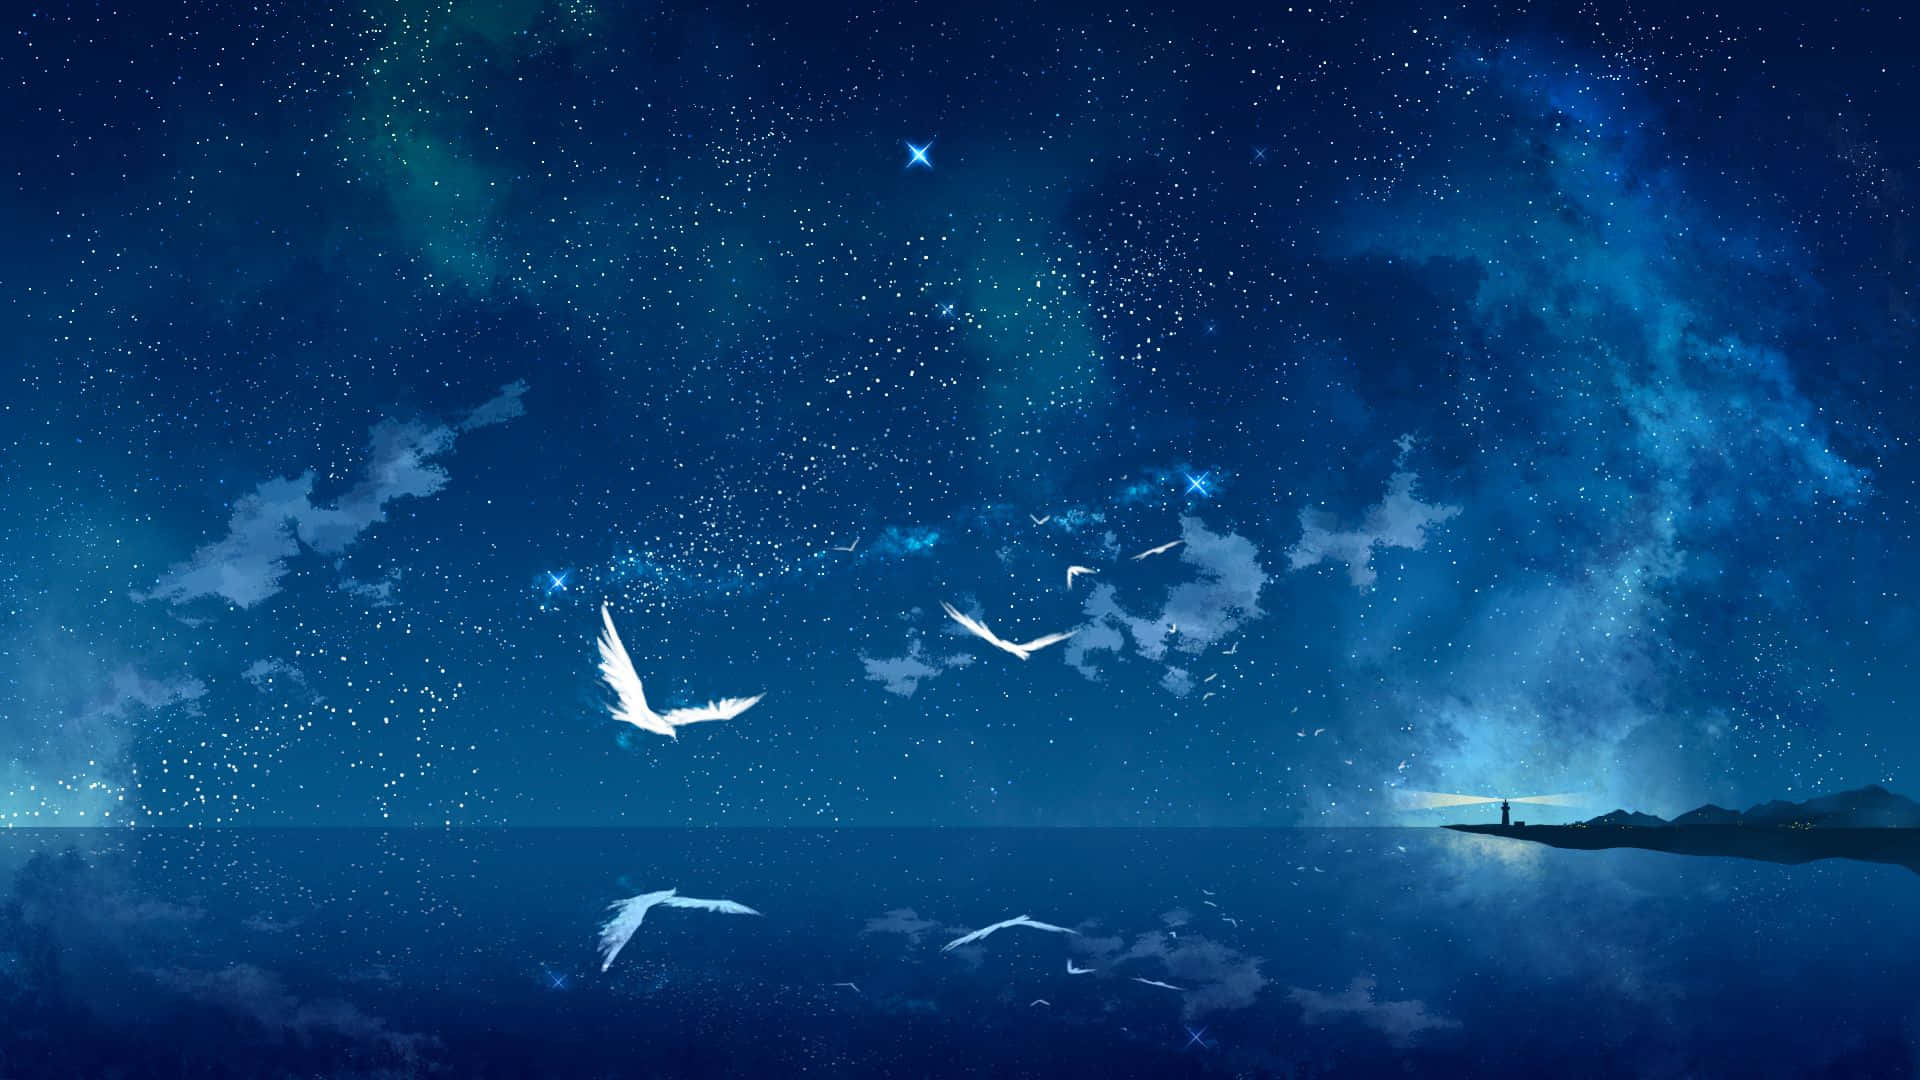 Dyk ned i en verden af drømme og Anime på Anime Nat! Wallpaper